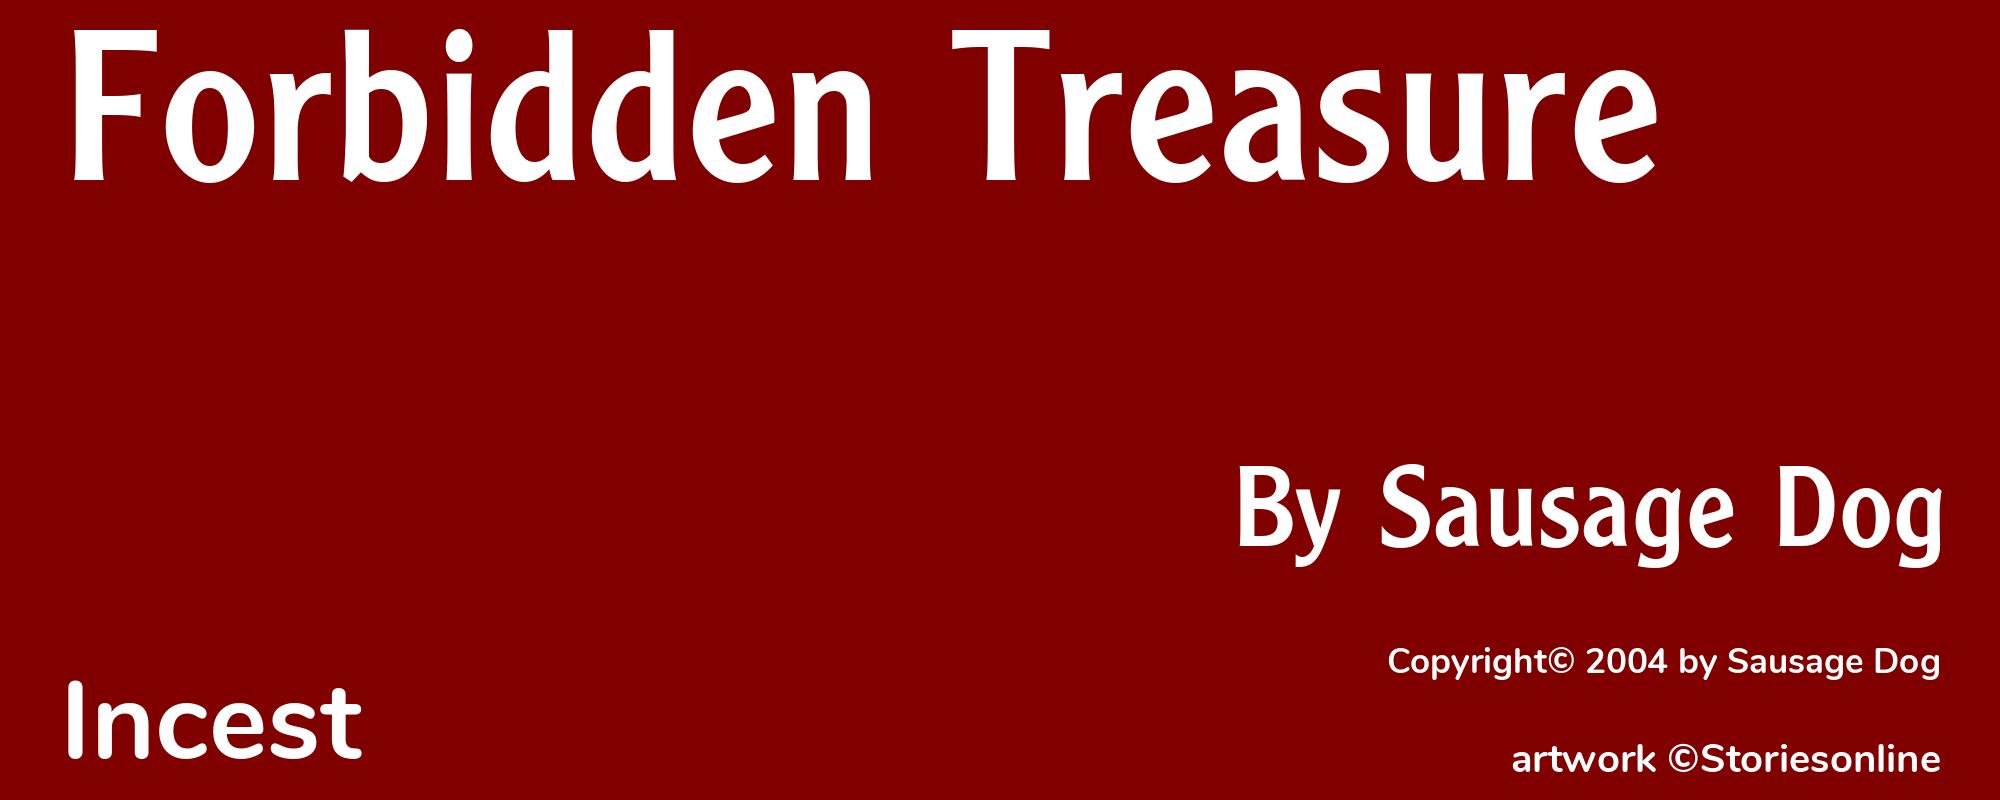 Forbidden Treasure - Cover